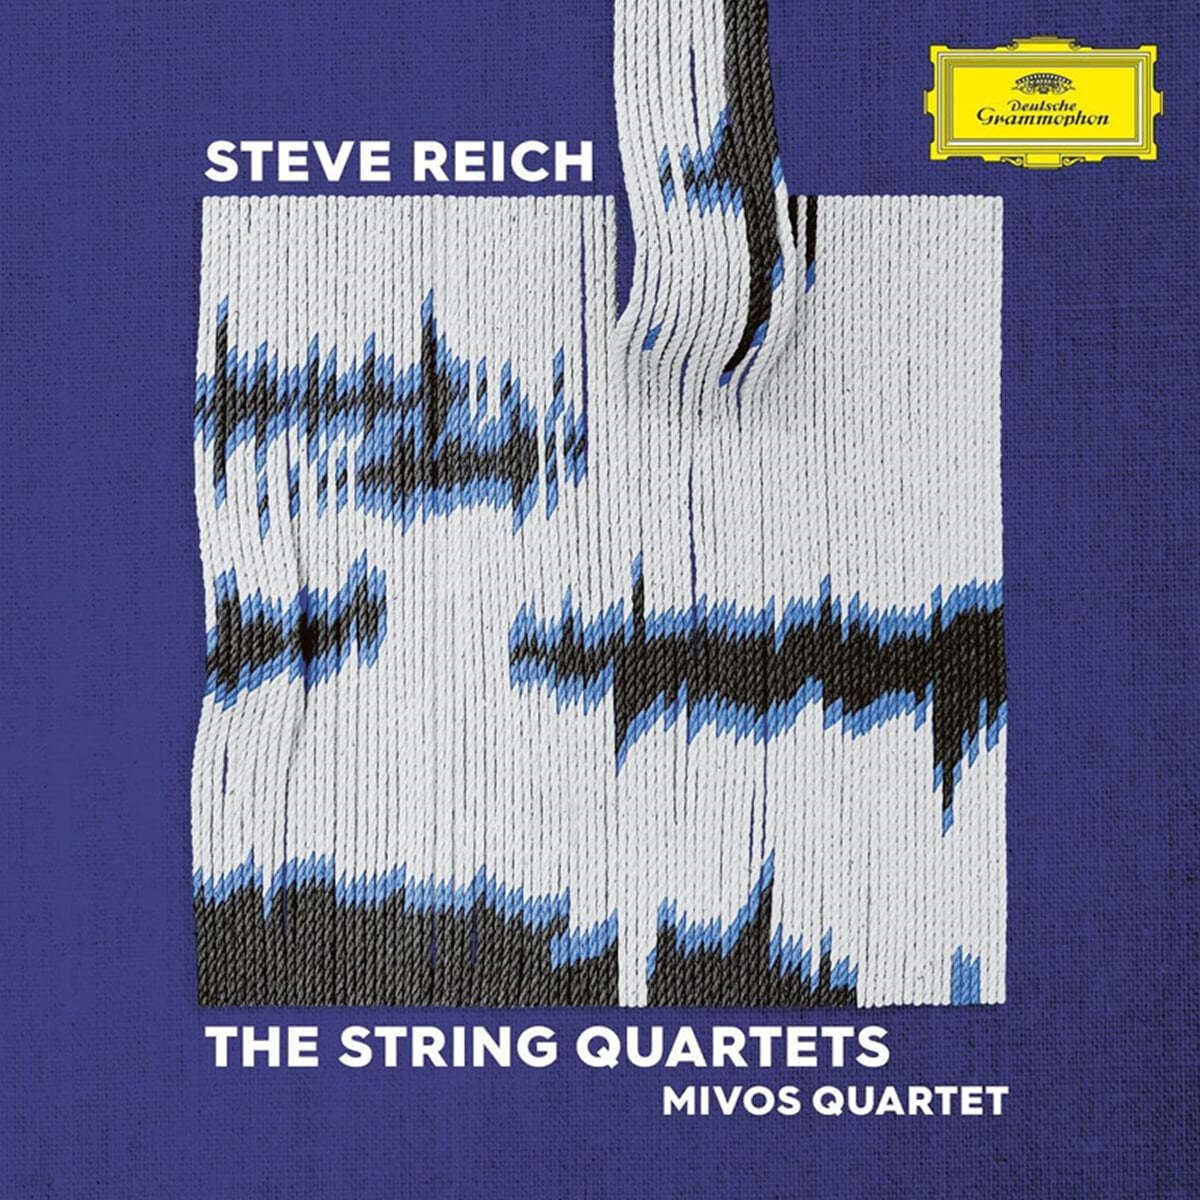 Mivos Quartet 스티브 라이히: 현악 사중주 (Steve Reich: The String Quartets) [2LP] 